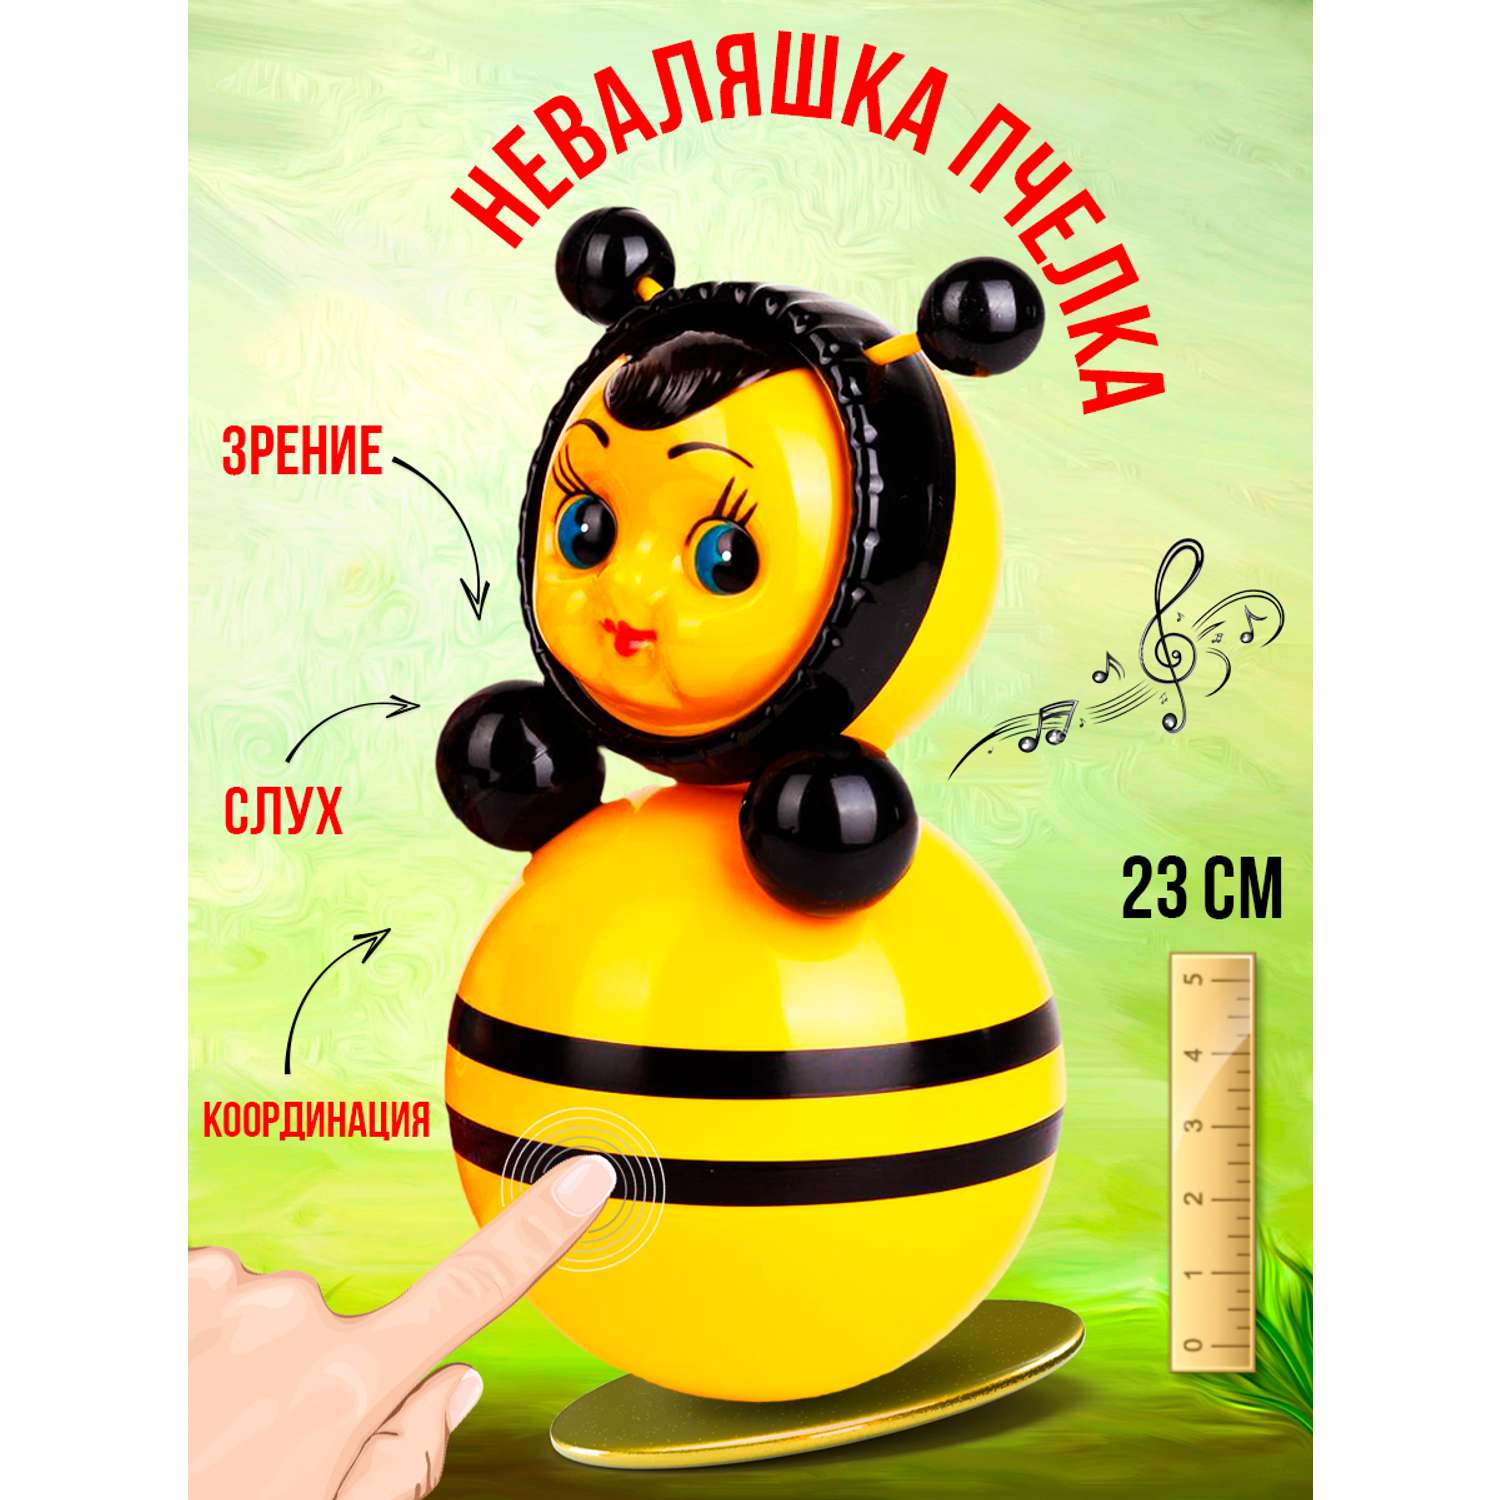 Пчела Неваляшка Котовские неваляшки музыкальная развивающая игрушка для детей 23 см Ручная роспись - фото 1